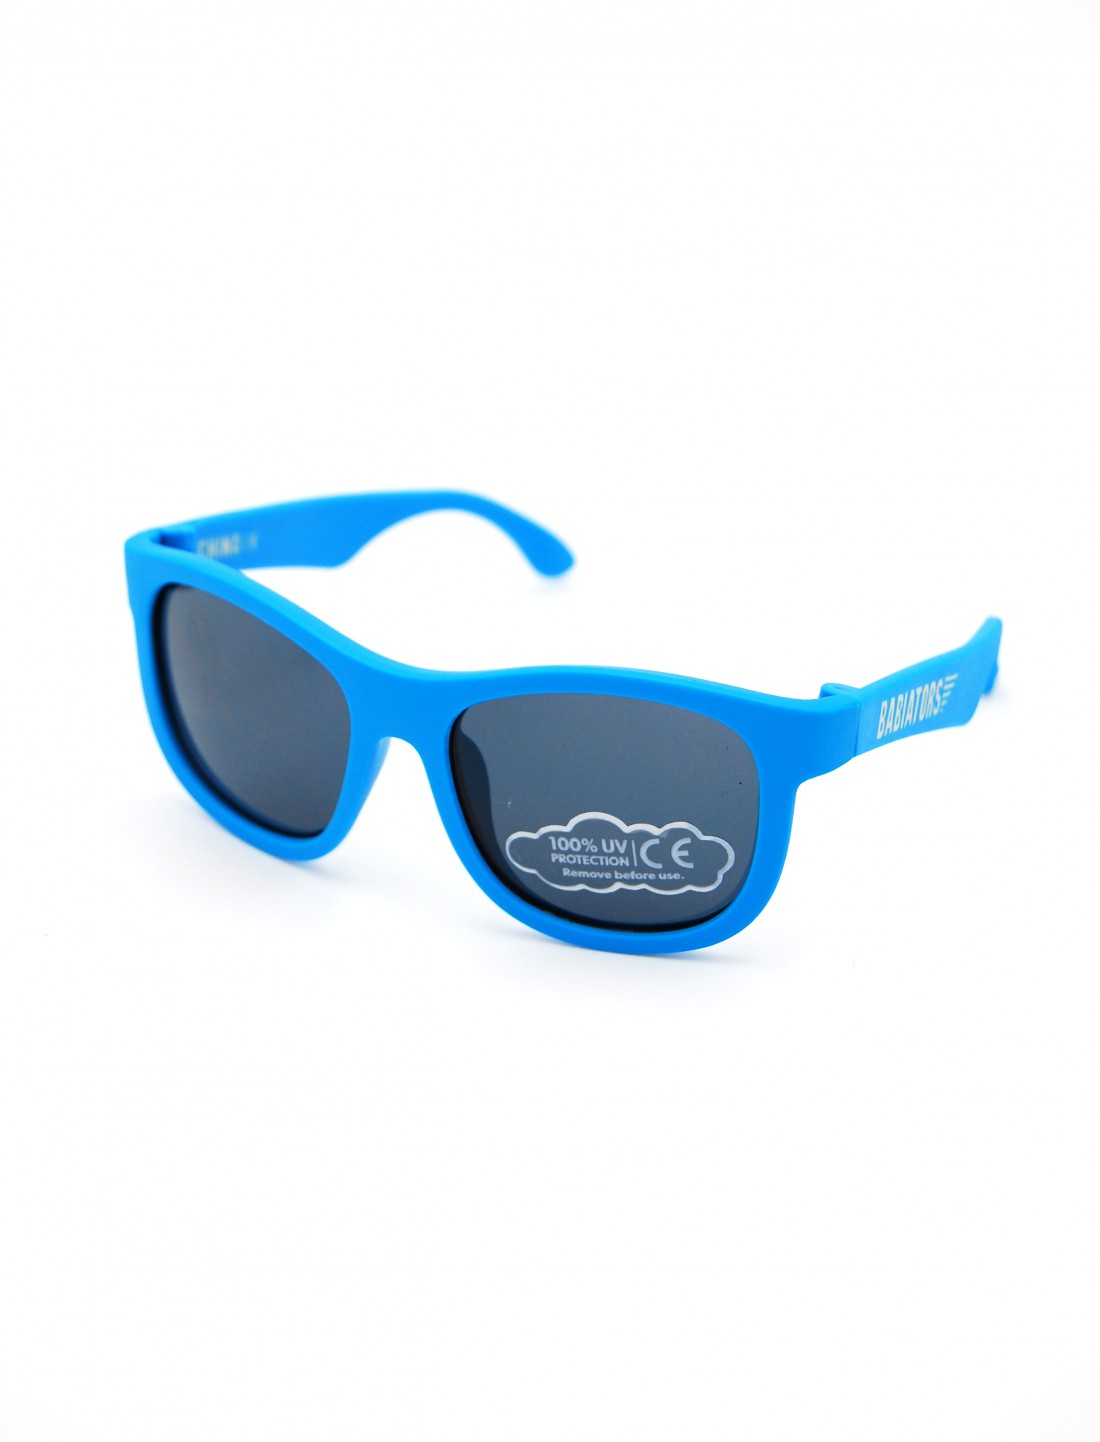 Gafas de Sol Flexibles Navigators Azul. Babiators